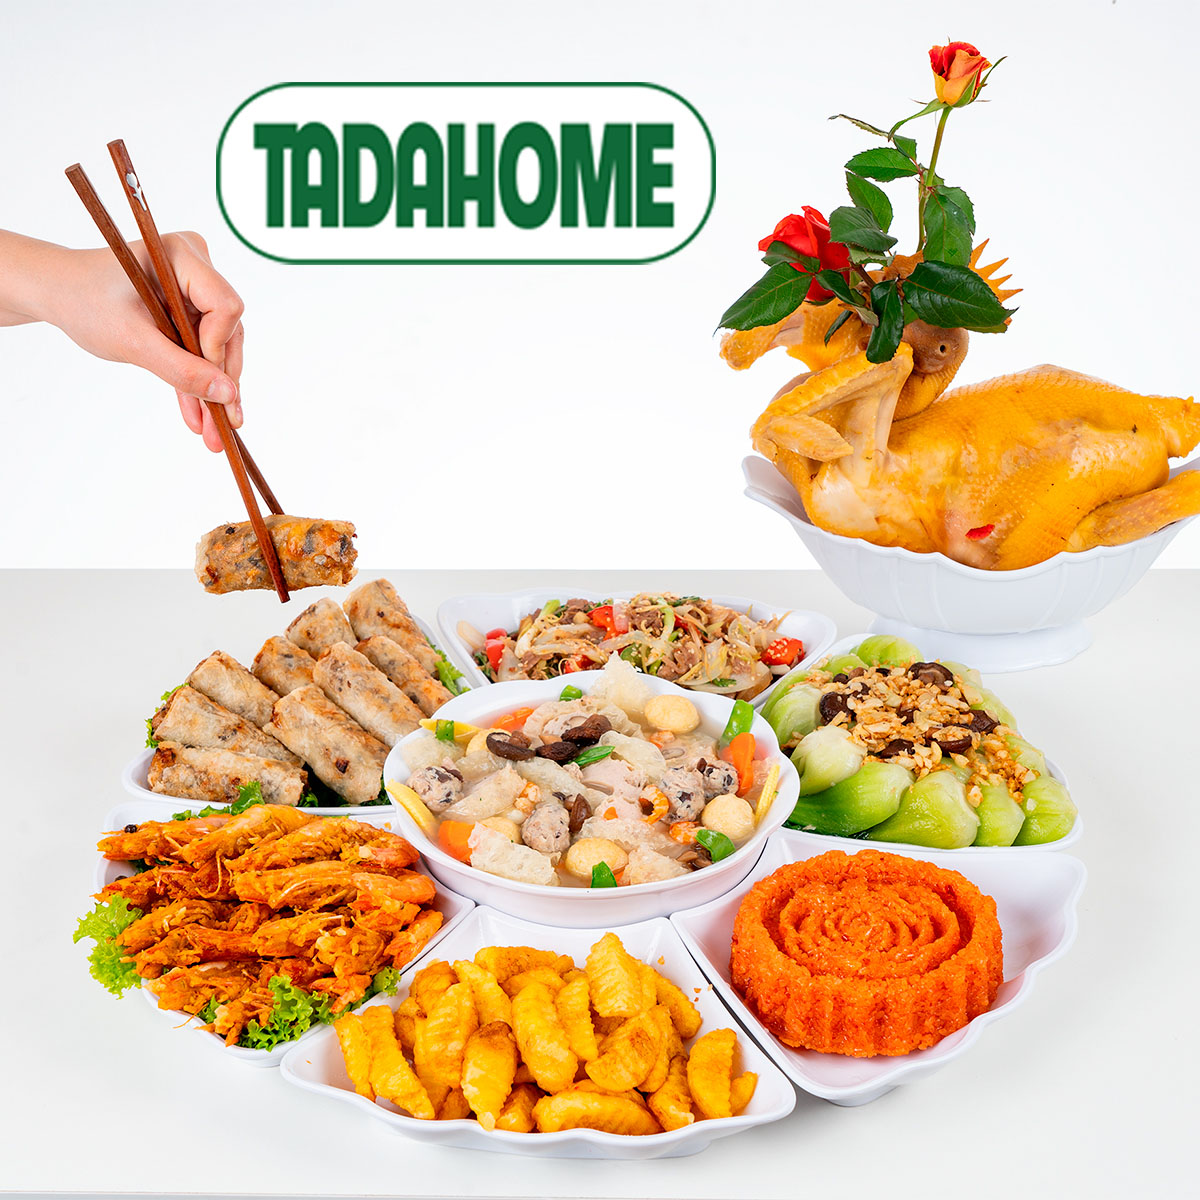 Bộ Chén Bát Đĩa Hoa Mặt Trời,Tô Hoa Việt Nhật 7 chi tiết để bày đồ ăn, đồ cúng 6836 đĩa hoa 6 cánh 1265 - TADAHOME